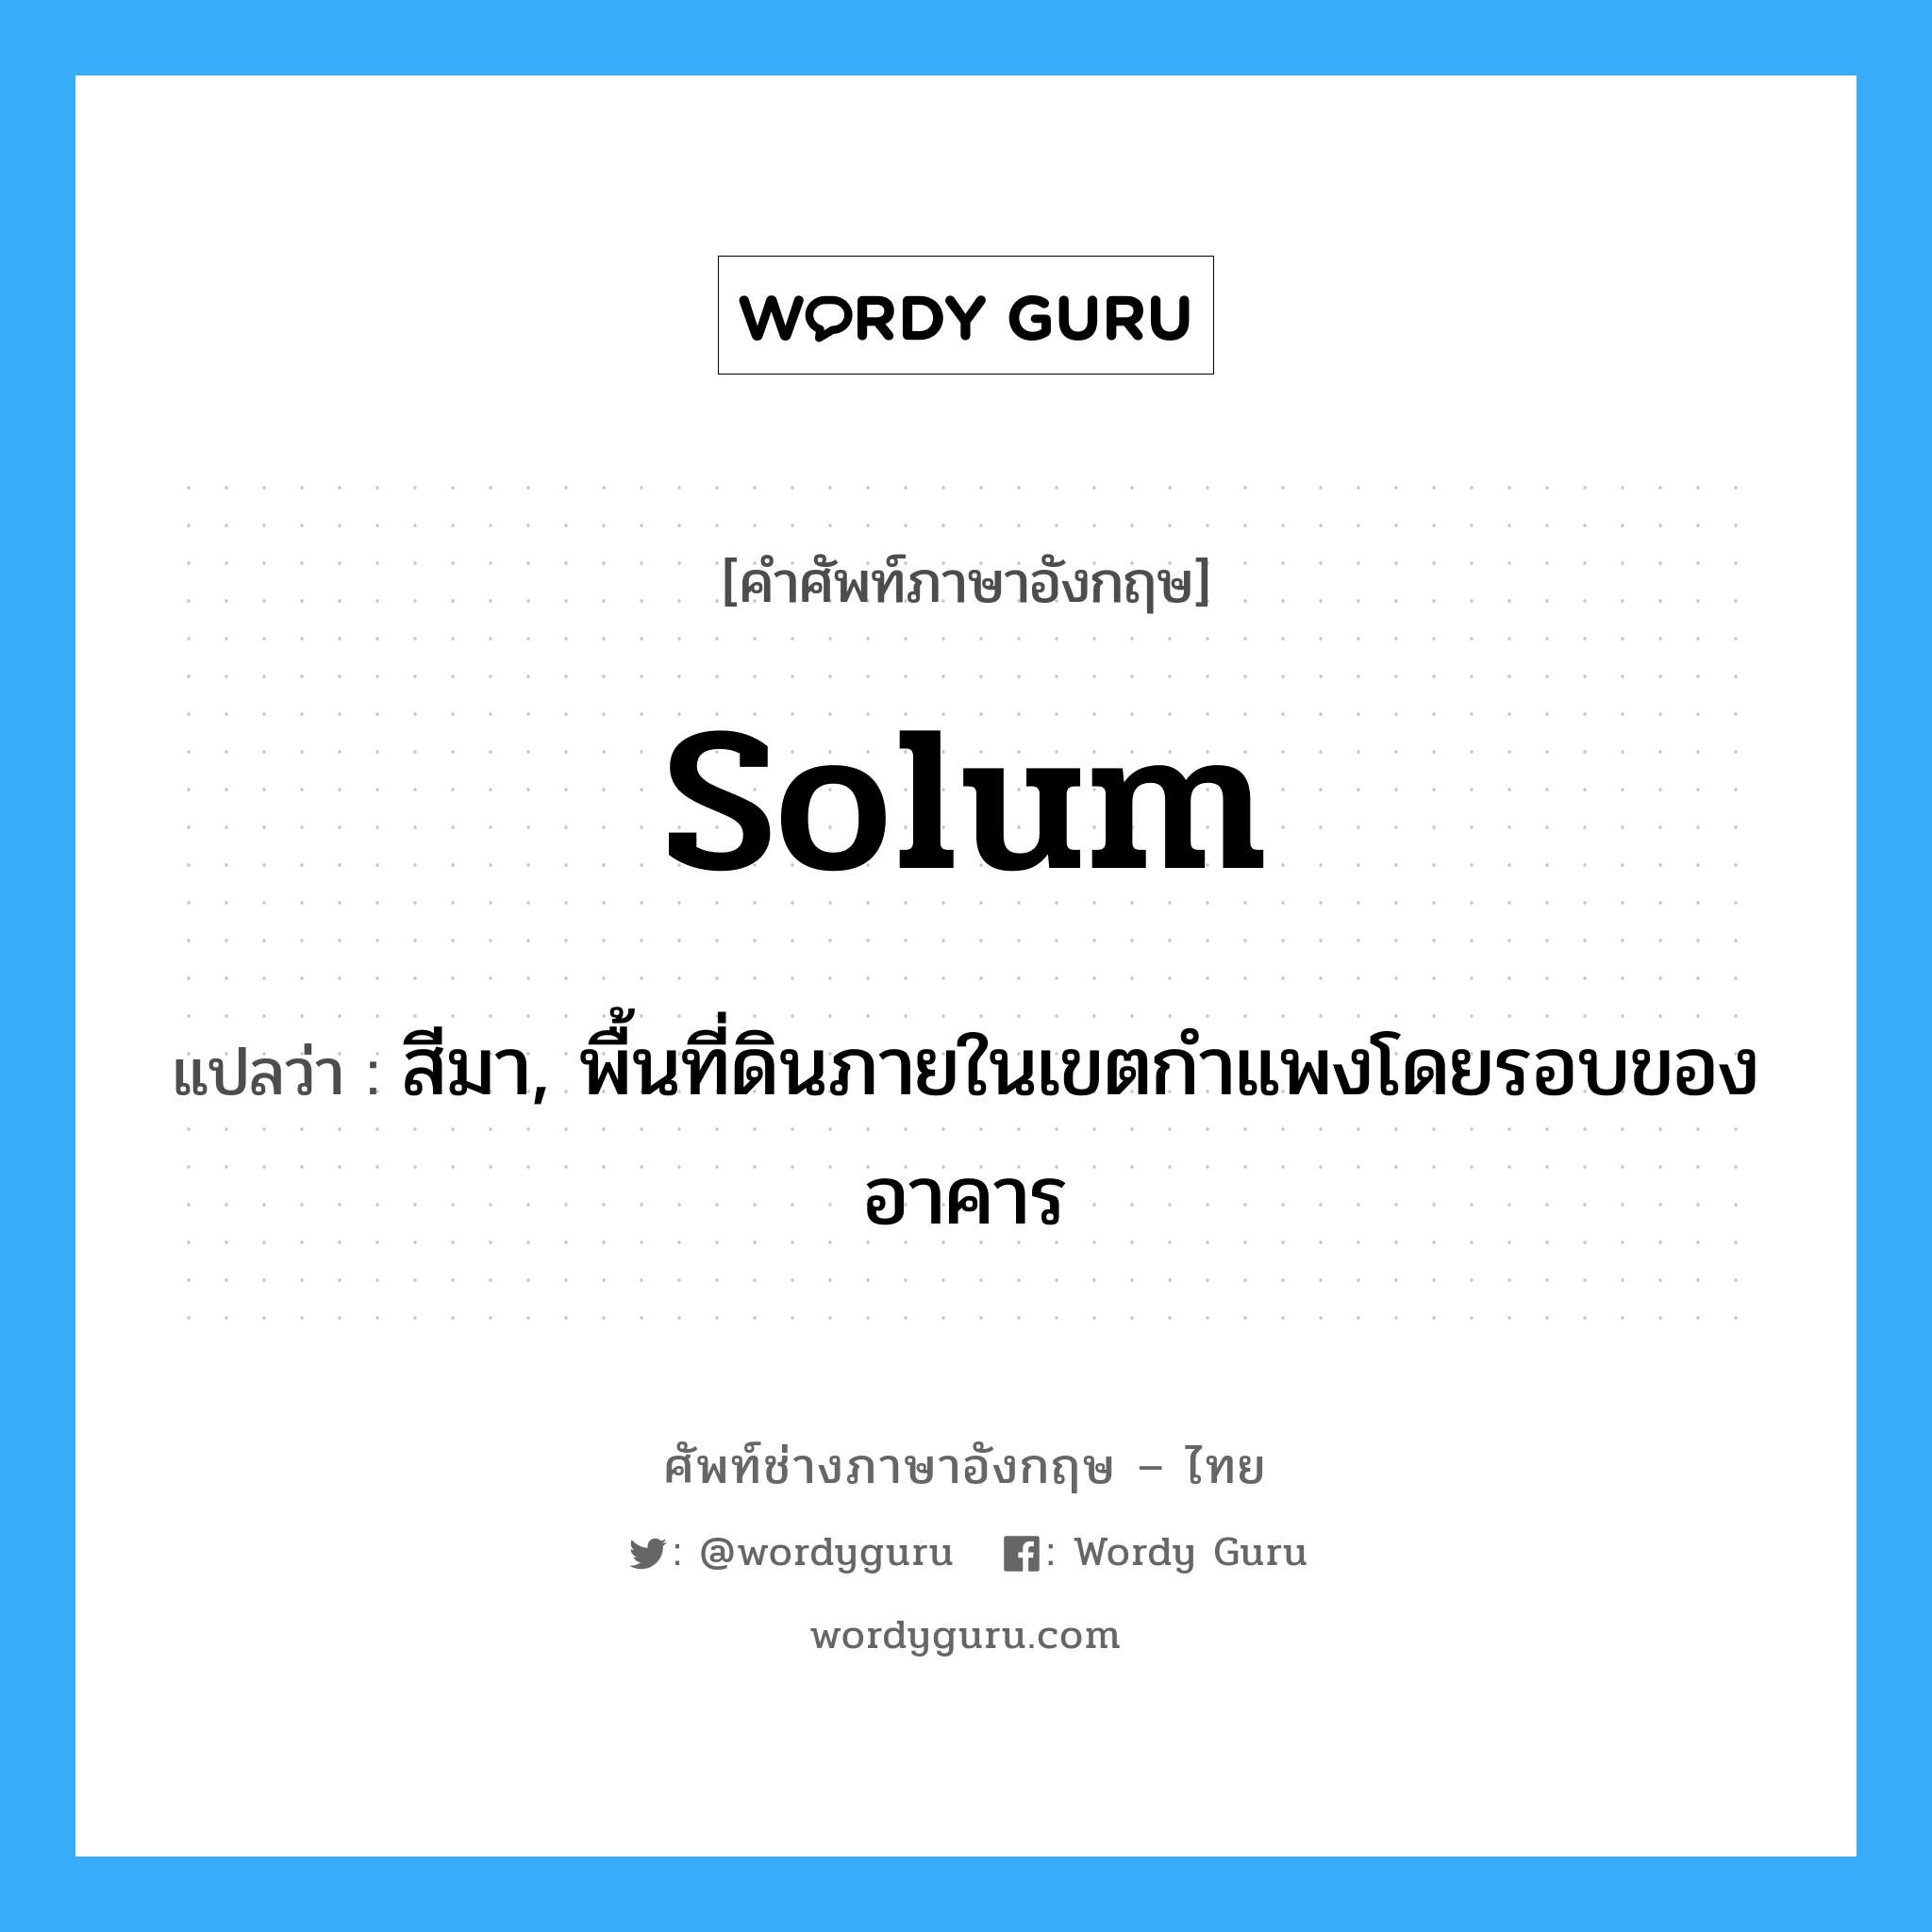 solum แปลว่า?, คำศัพท์ช่างภาษาอังกฤษ - ไทย solum คำศัพท์ภาษาอังกฤษ solum แปลว่า สีมา, พื้นที่ดินภายในเขตกำแพงโดยรอบของอาคาร